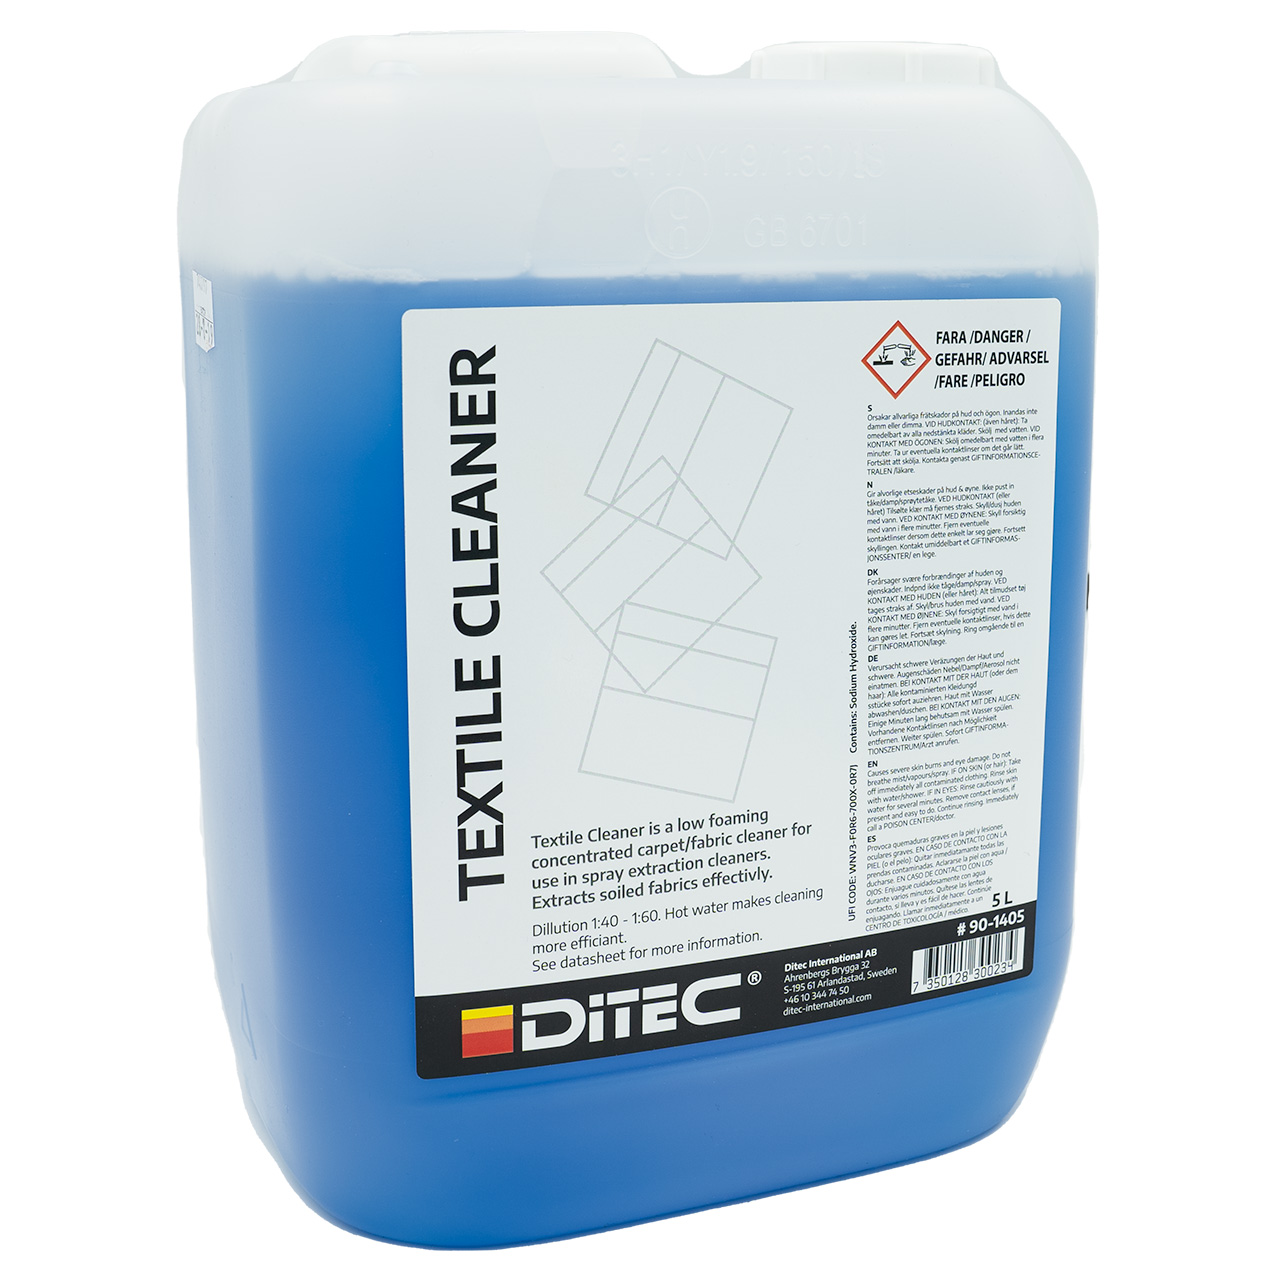 Ditec Textile Cleaner 5 Liter.